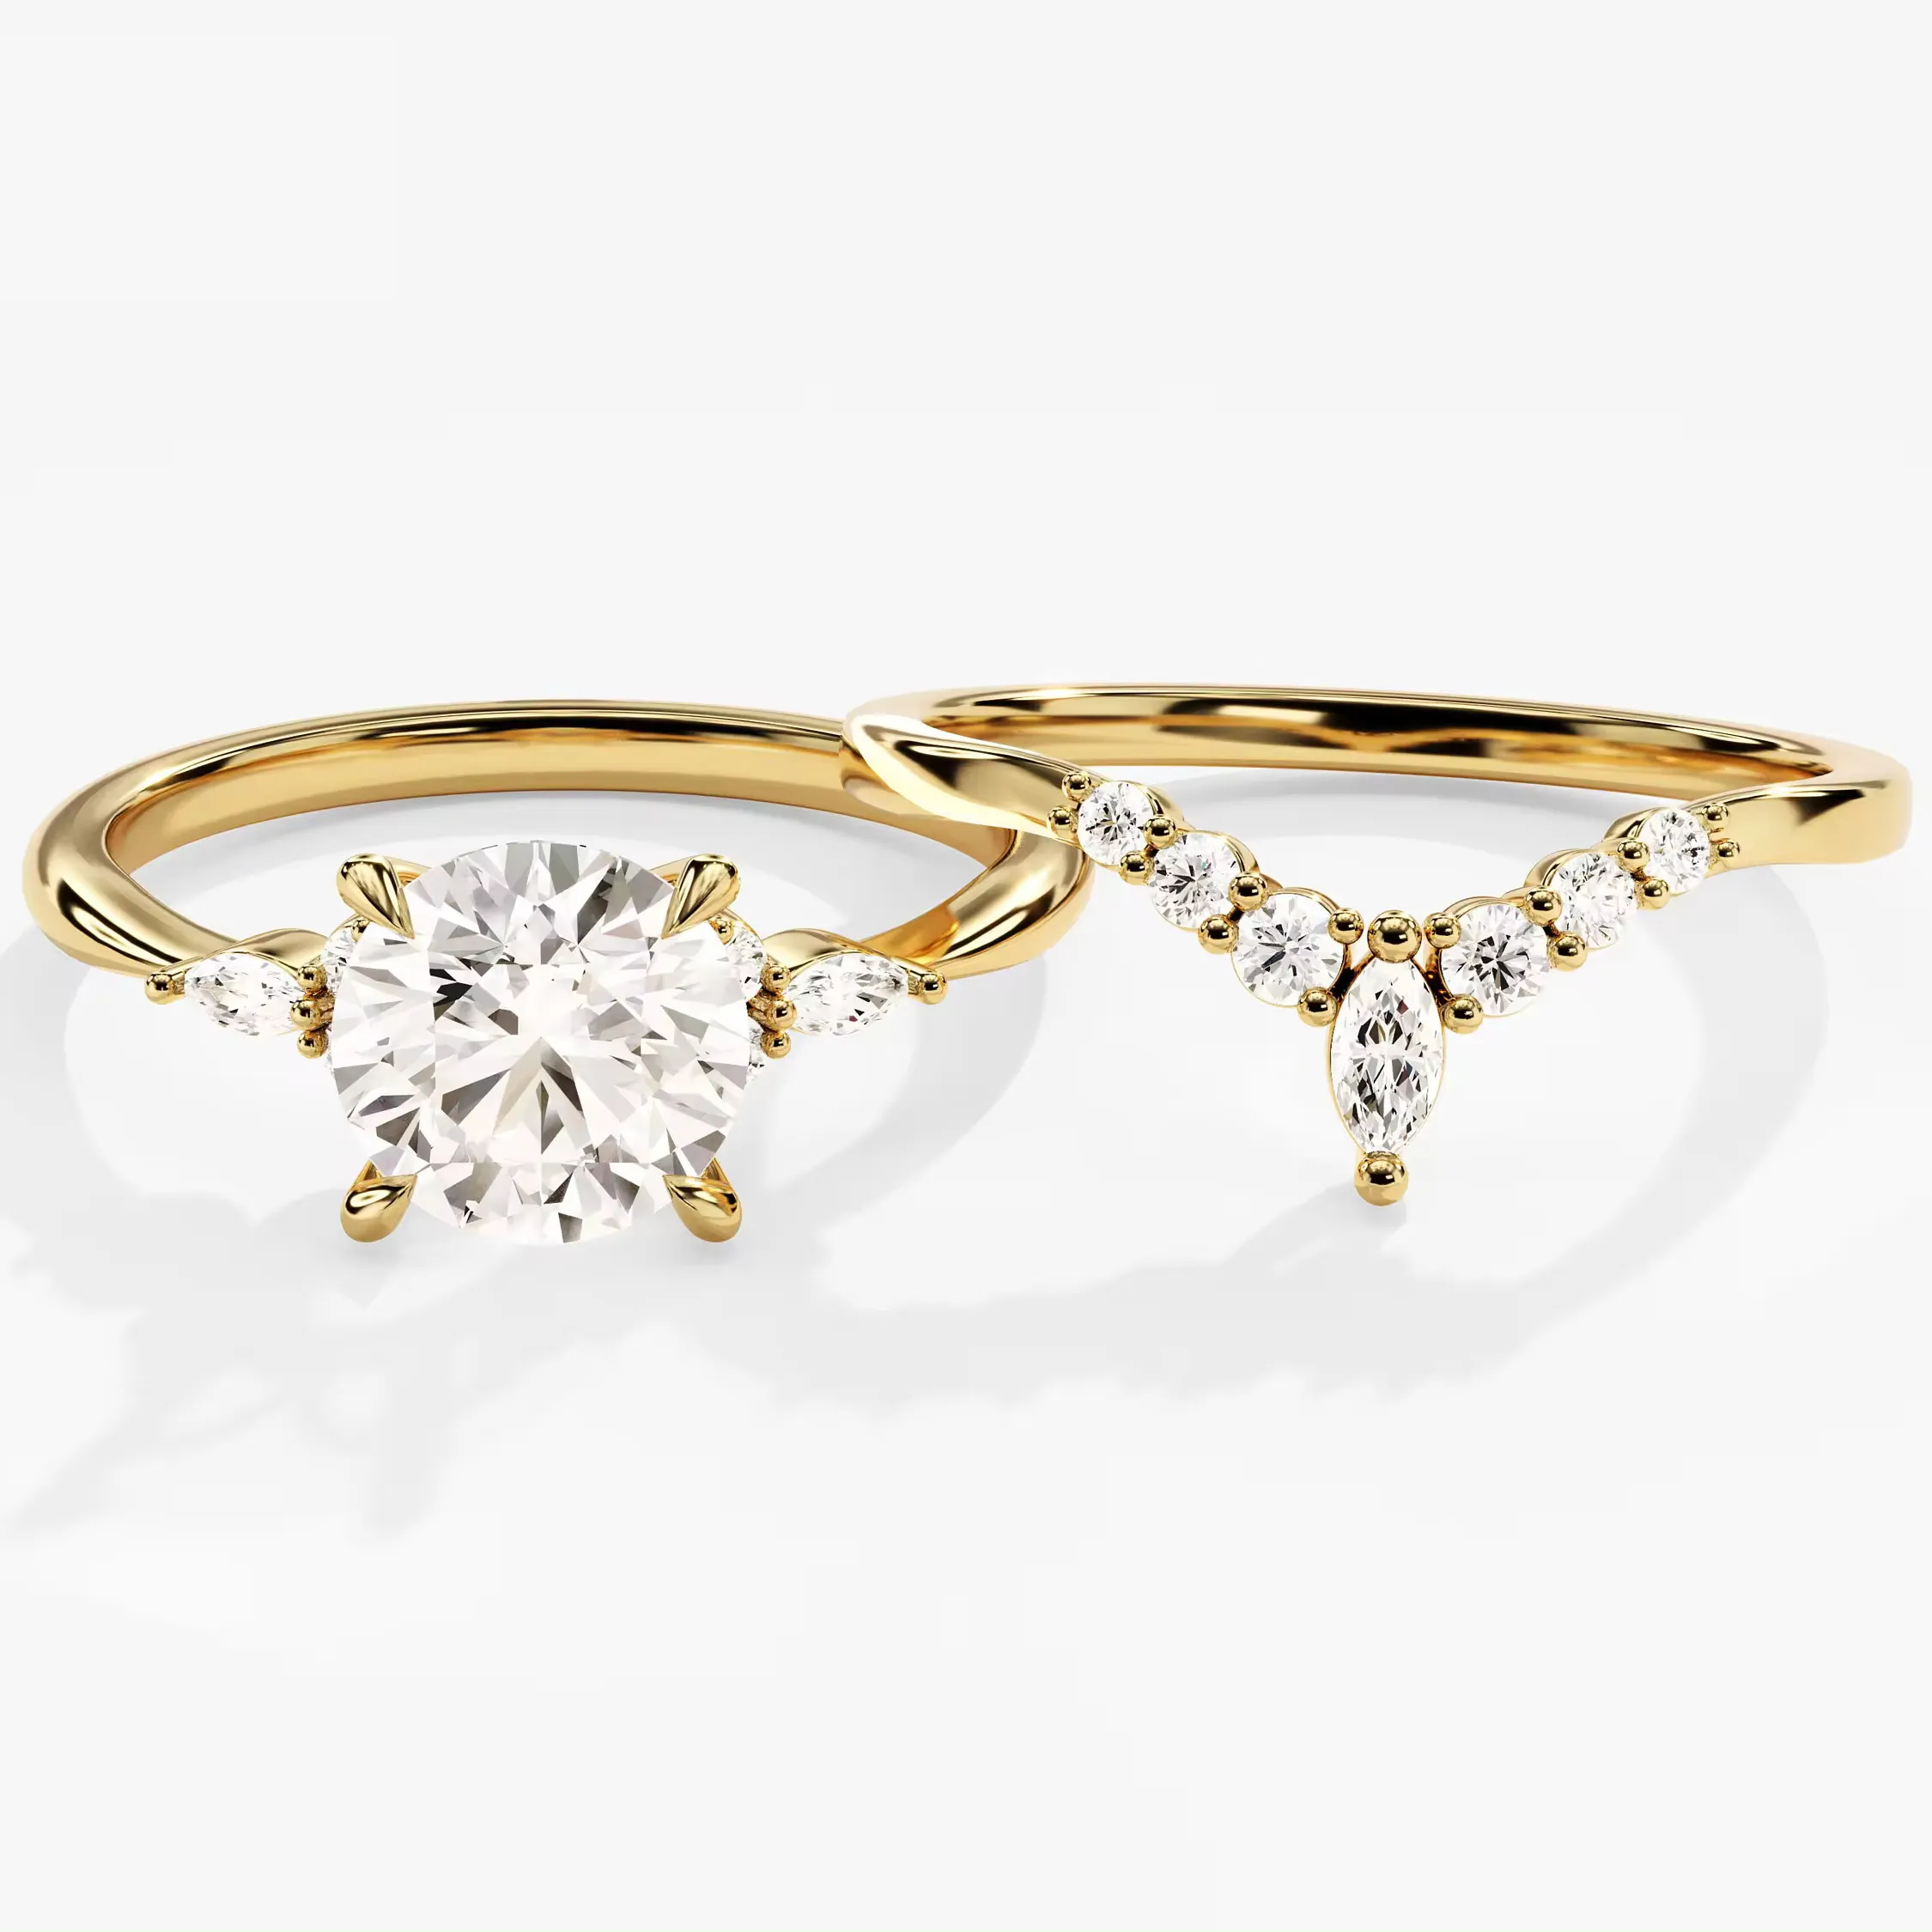 Vintage elmas düğün Band seti 14k altın kavisli aksan elmas nişan yüzüğü yuvarlak küme alyans